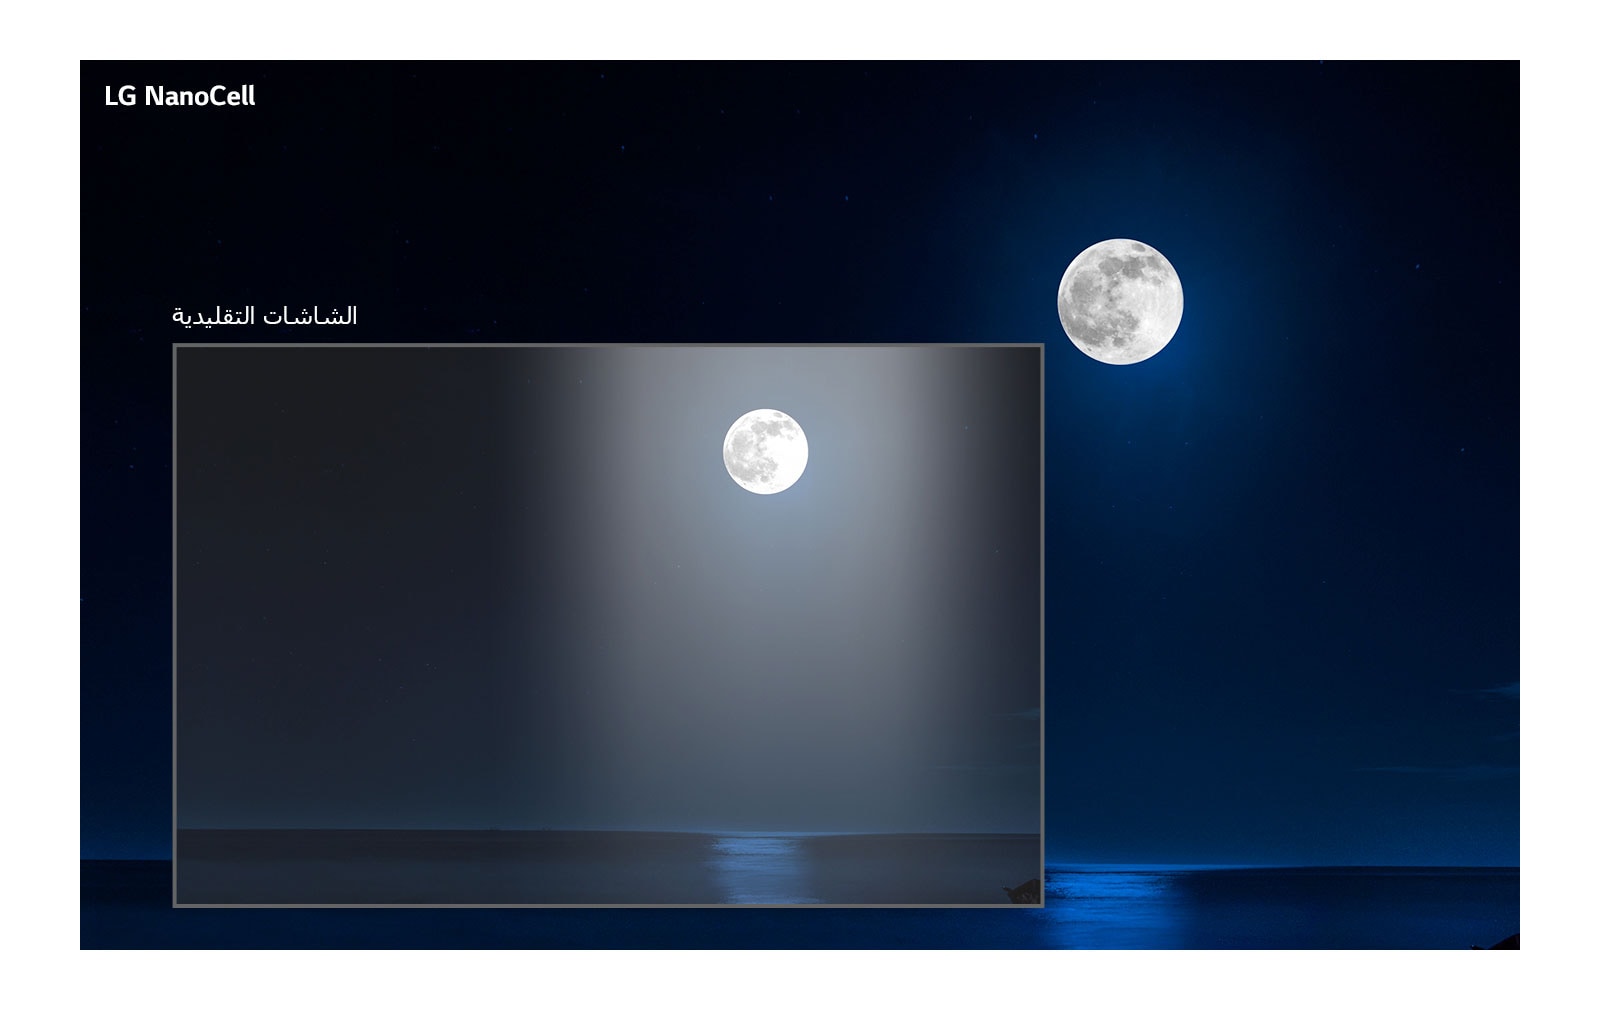 مشهد مظلم لقمر مكتمل يسطع على الماء.  يعرض القسم الموجود في أسفل اليسار الصورة على تلفاز تقليدي بهالة وألوان أقل وضوحًا، بينما تُظهر الصورة المحيطة الأكبر المشهد على تلفاز LG NanoCell. 